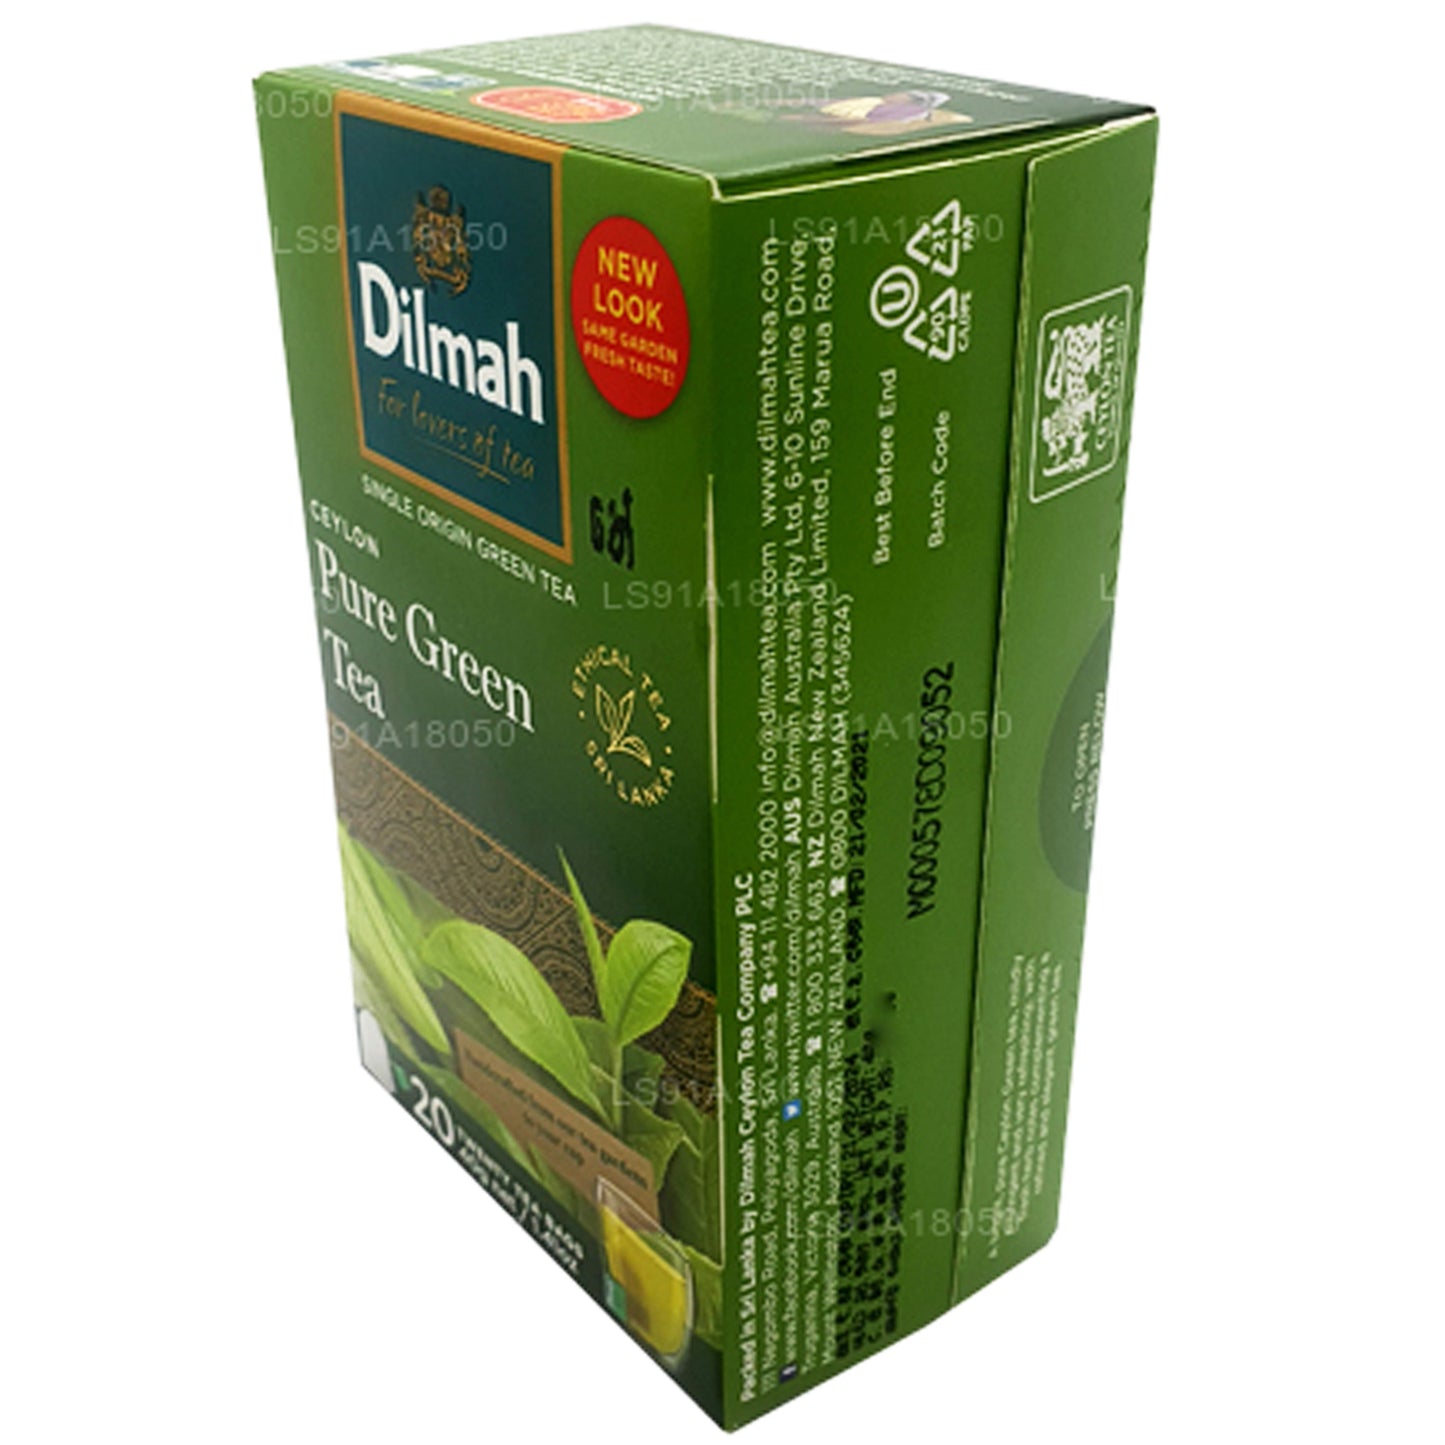 Thé vert Dilmah Pure Ceylan (40 g) 20 sachets de thé